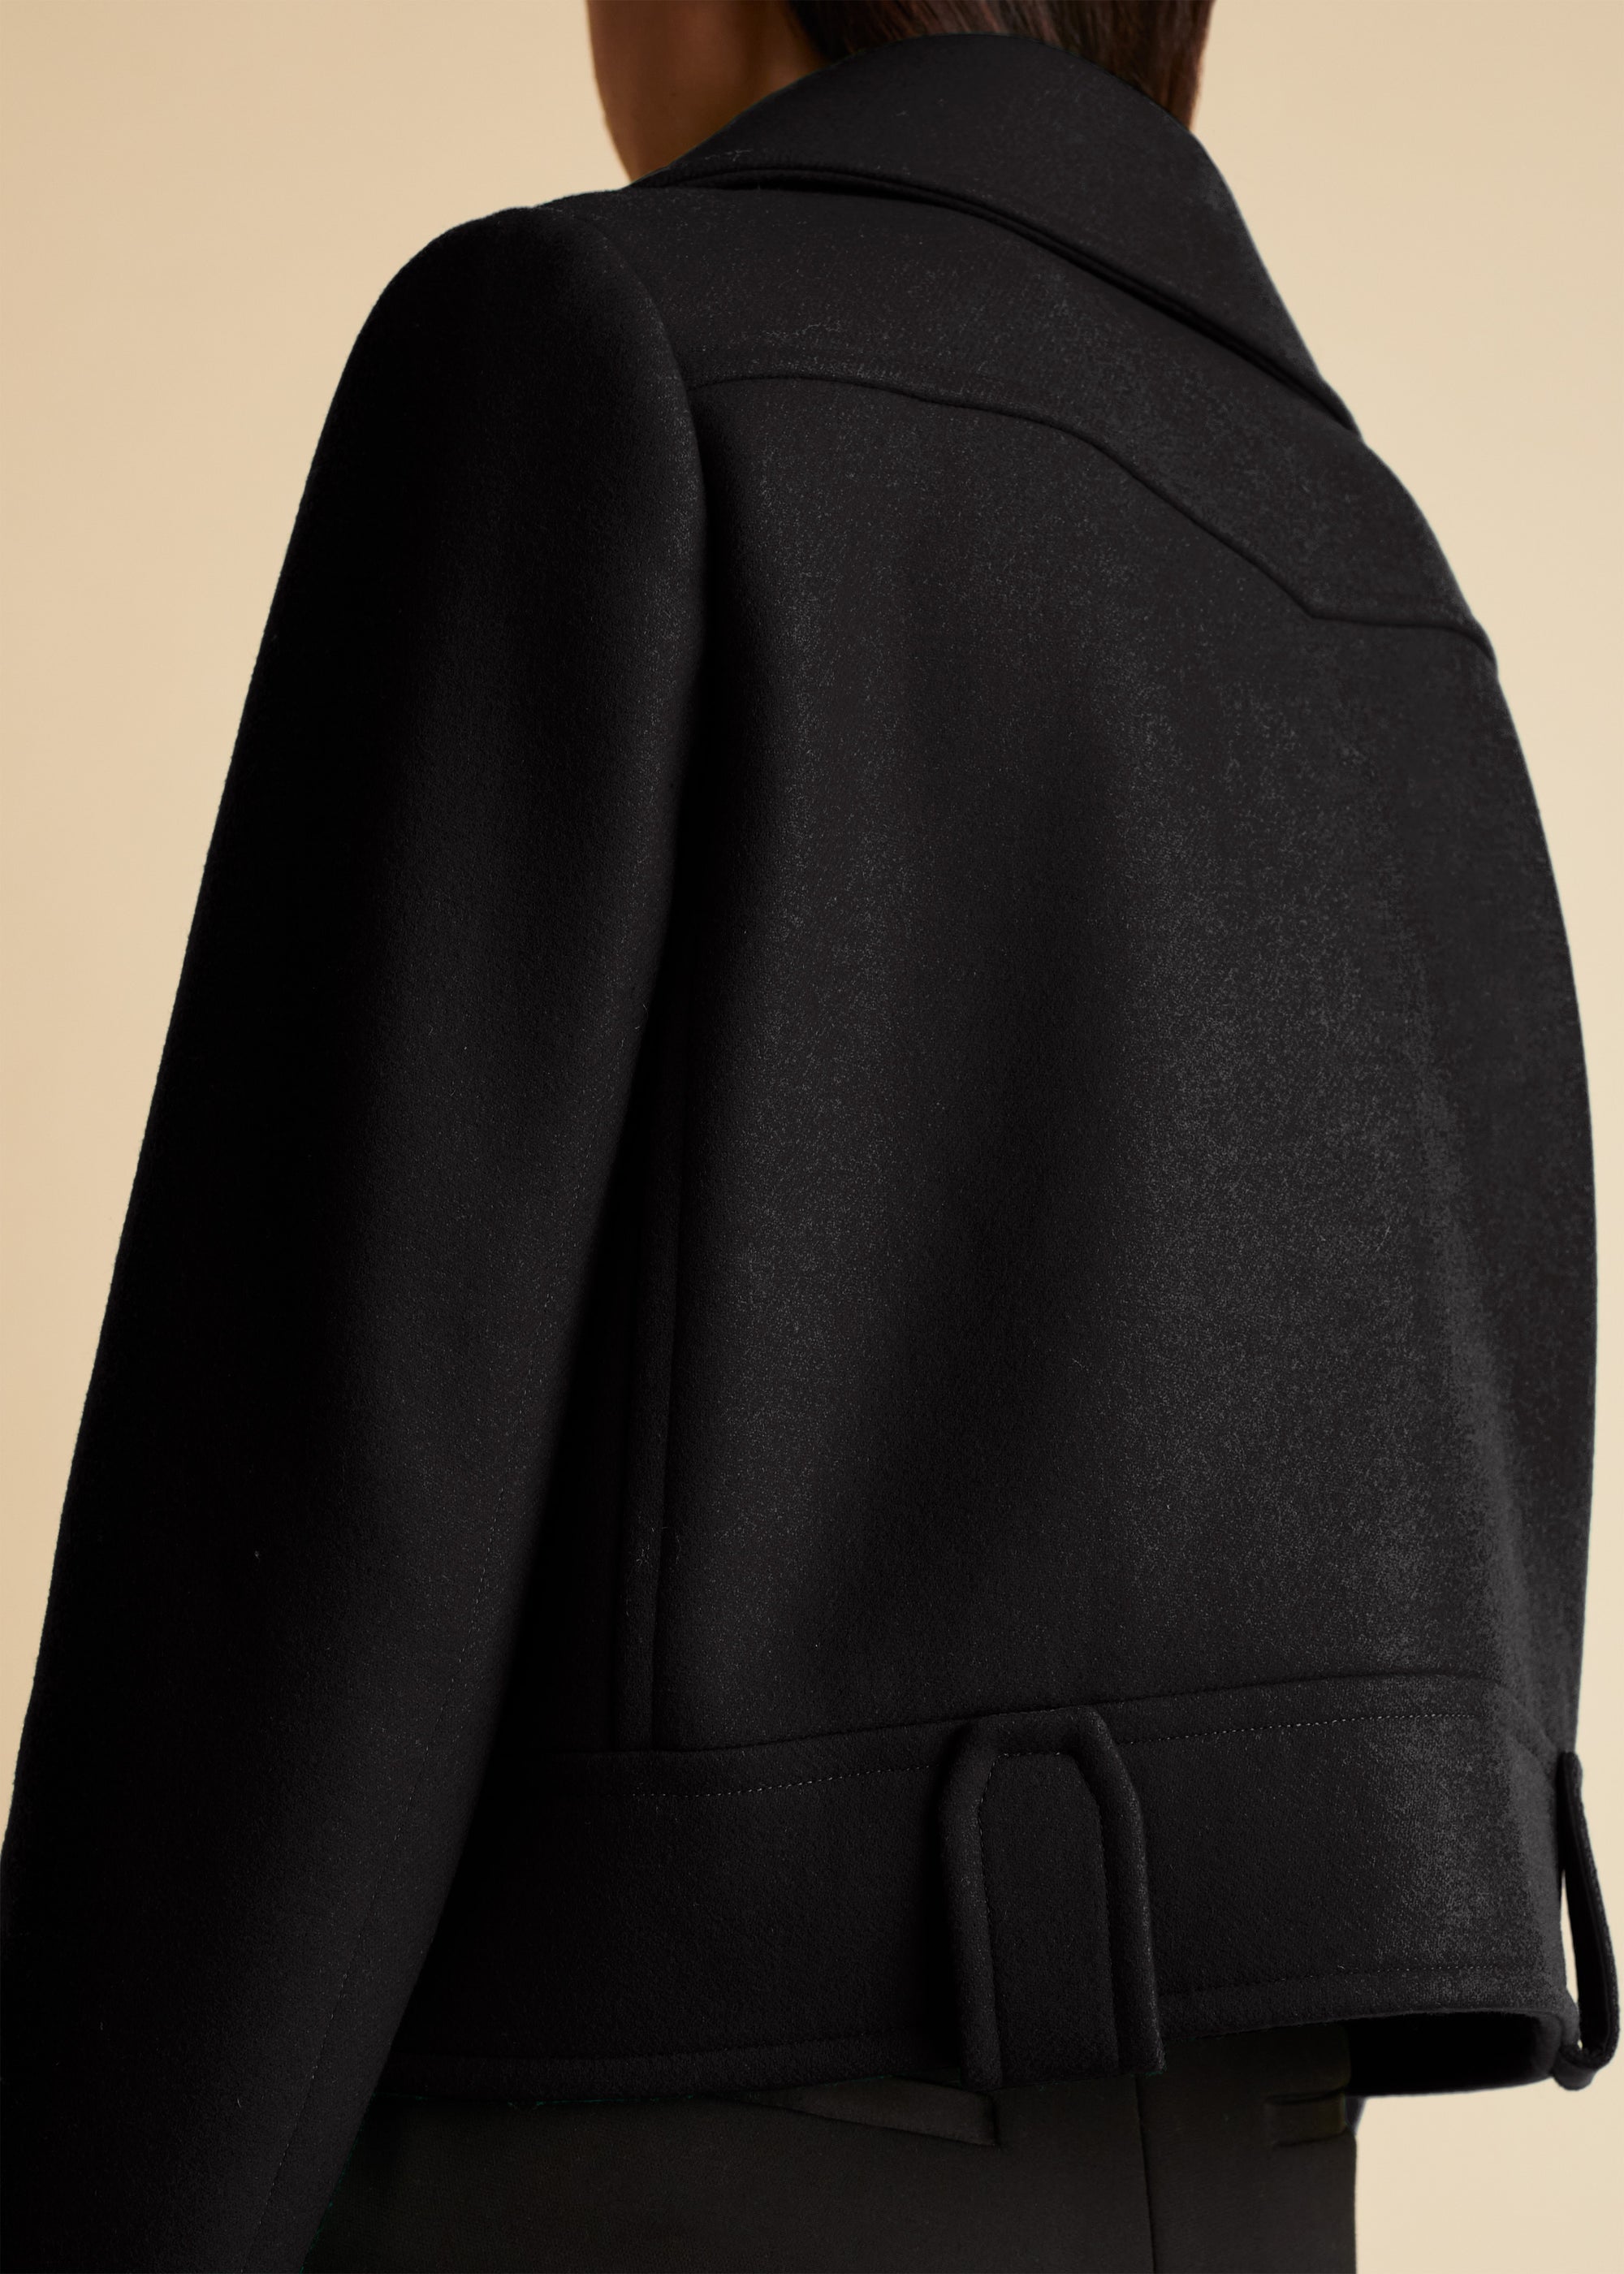 Blanca jacket in wool - Black